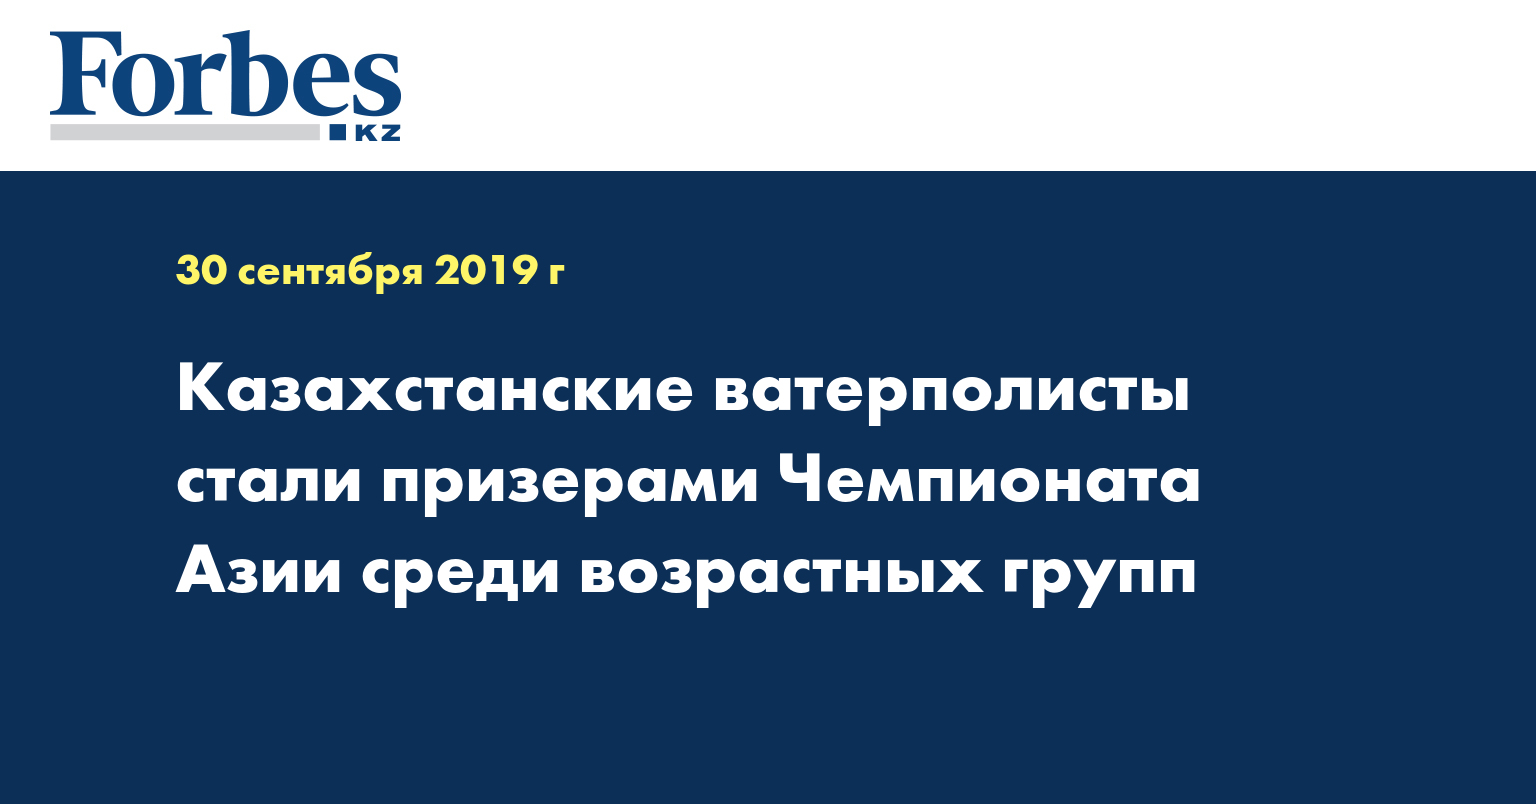  Казахстанские ватерполисты стали призерами Чемпионата Азии среди возрастных групп